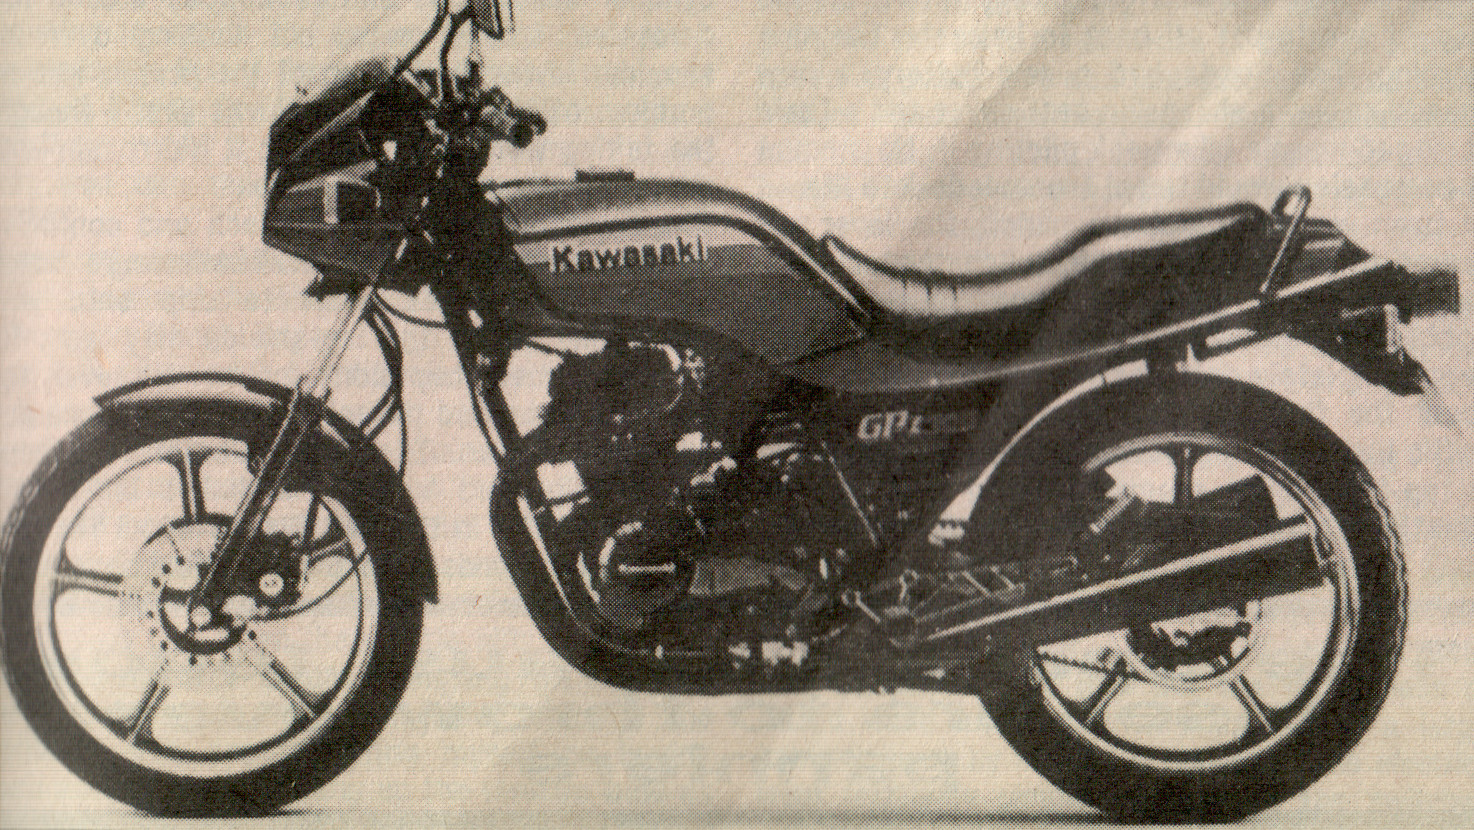 Yew Gee: Kawasaki GPz305